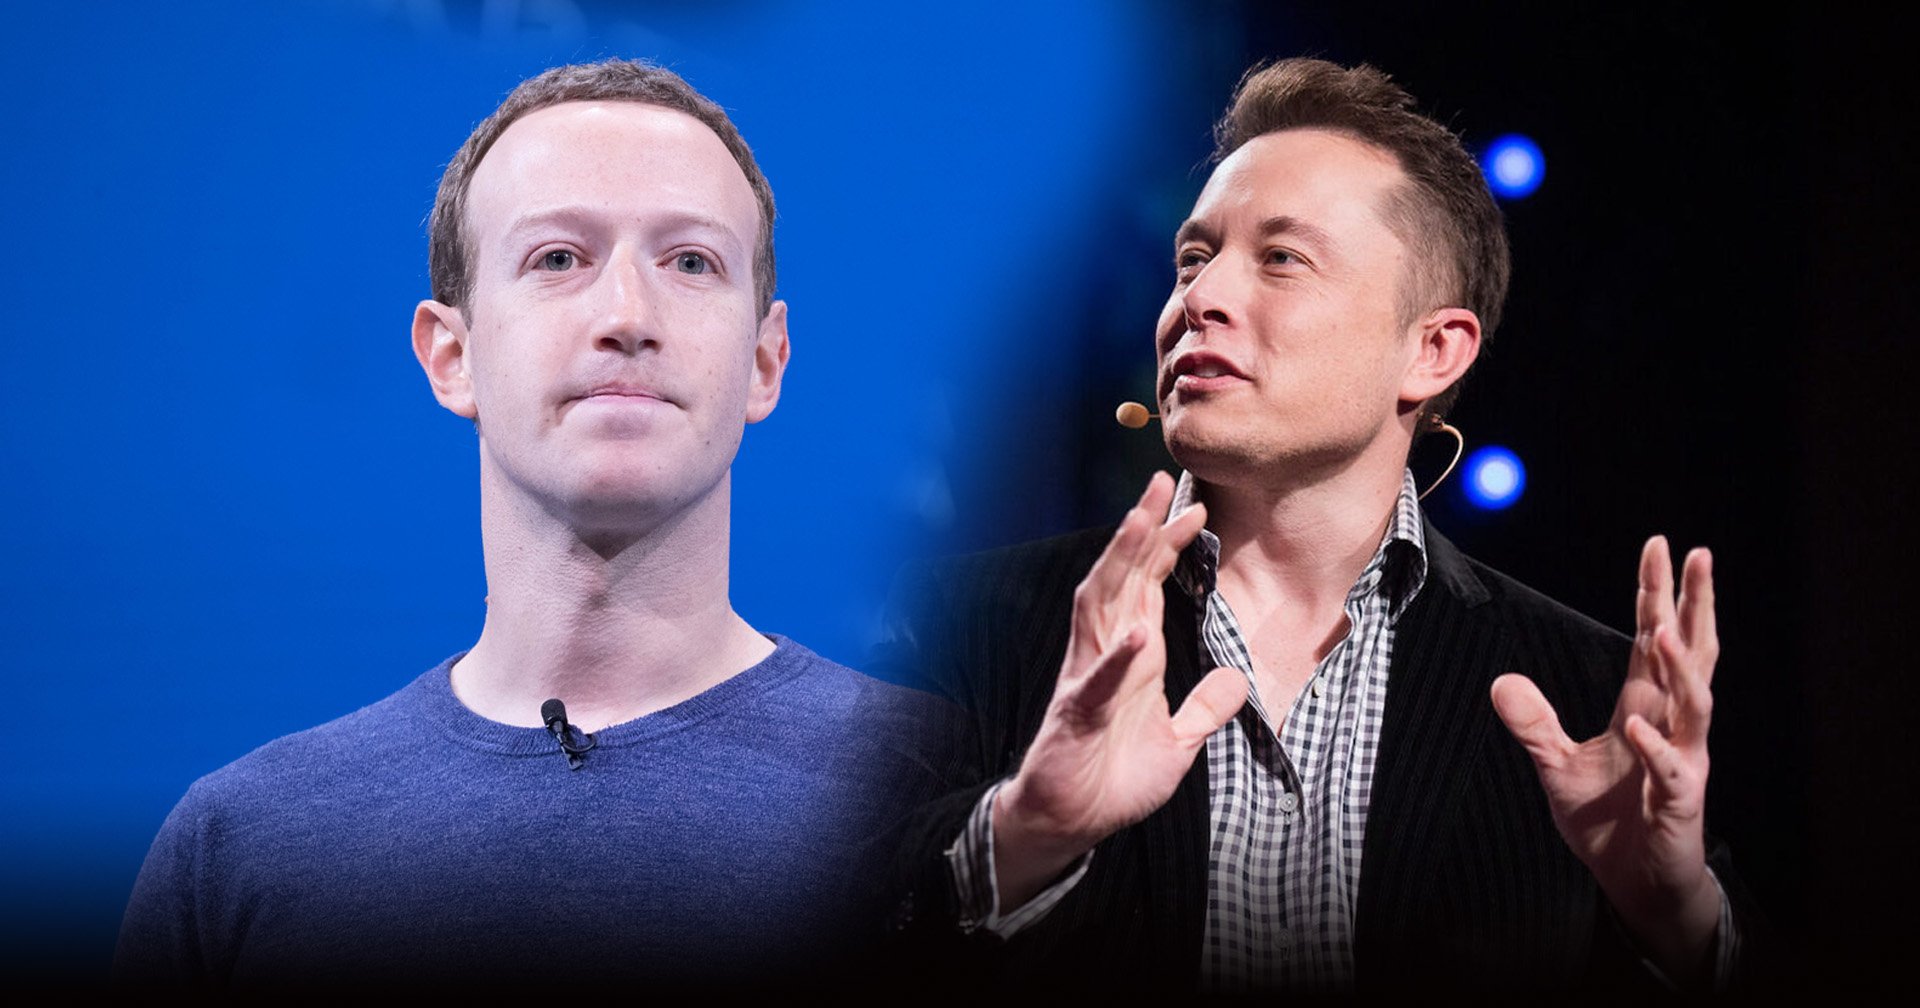 องค์การอวกาศยุโรปแซะ Mark Zuckerberg จะเริ่มสร้างจรวดเหมือน Elon Musk มั้ย? หลังจากเปิดตัว Threads ที่คล้าย Twitter